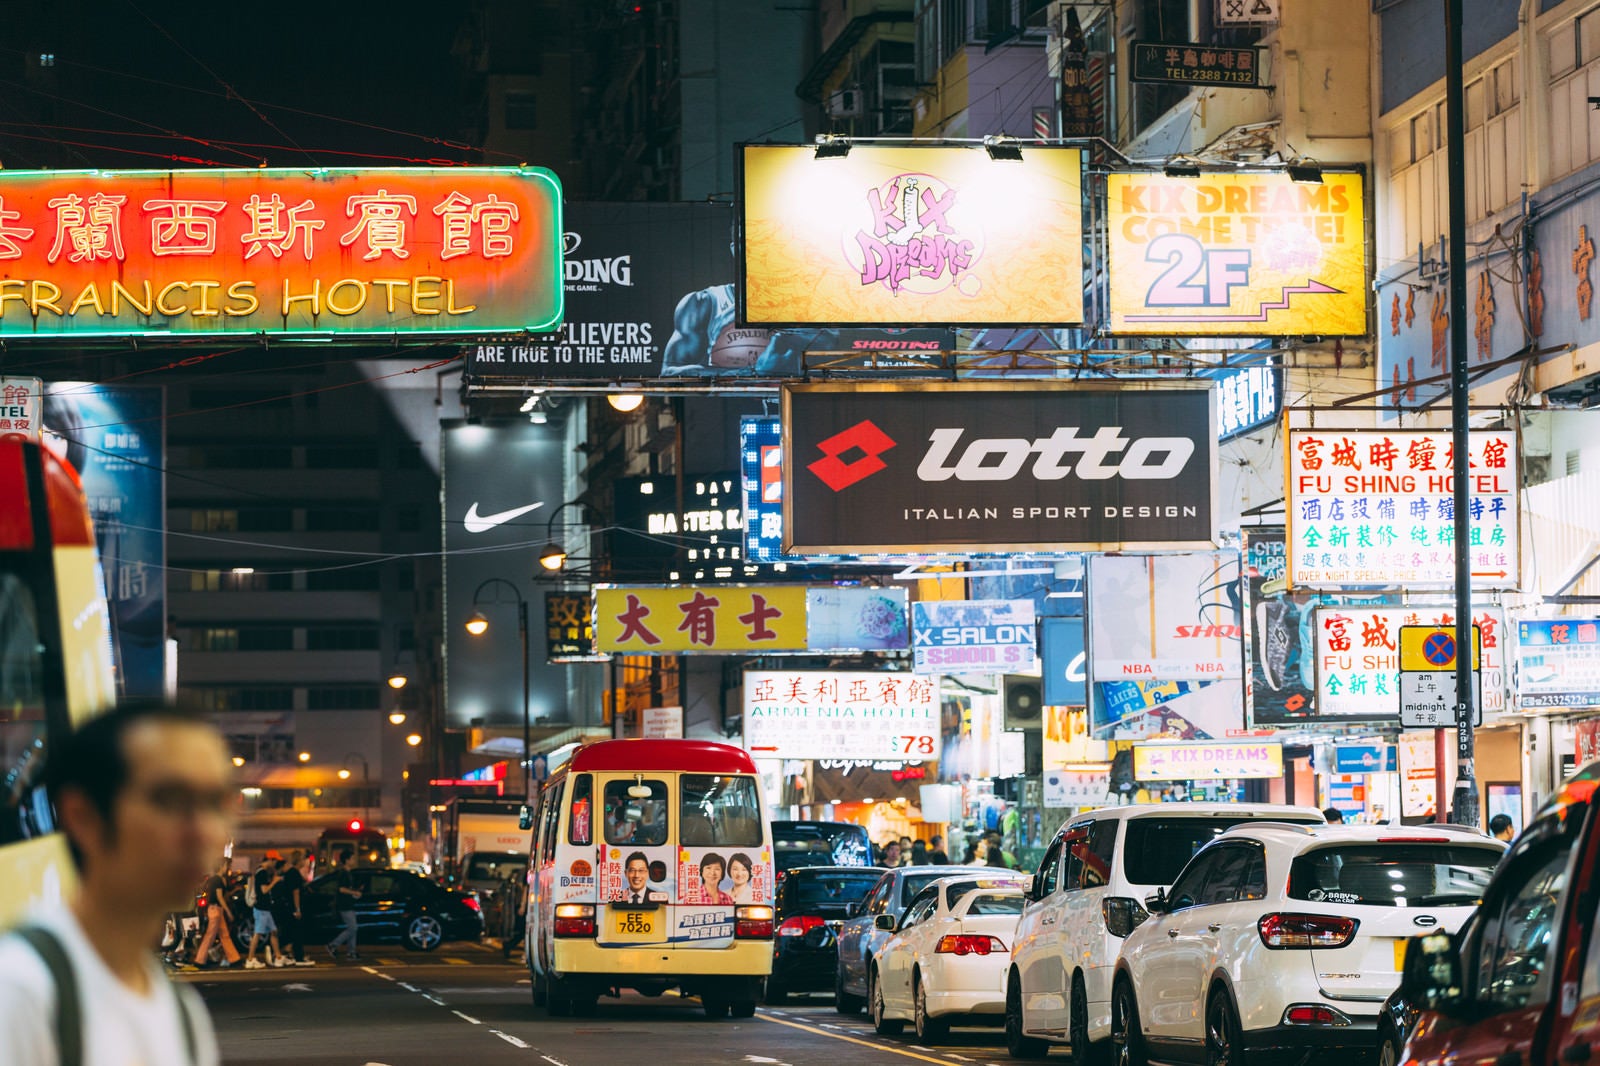 「夜の香港のネオン看板と渋滞する車」の写真